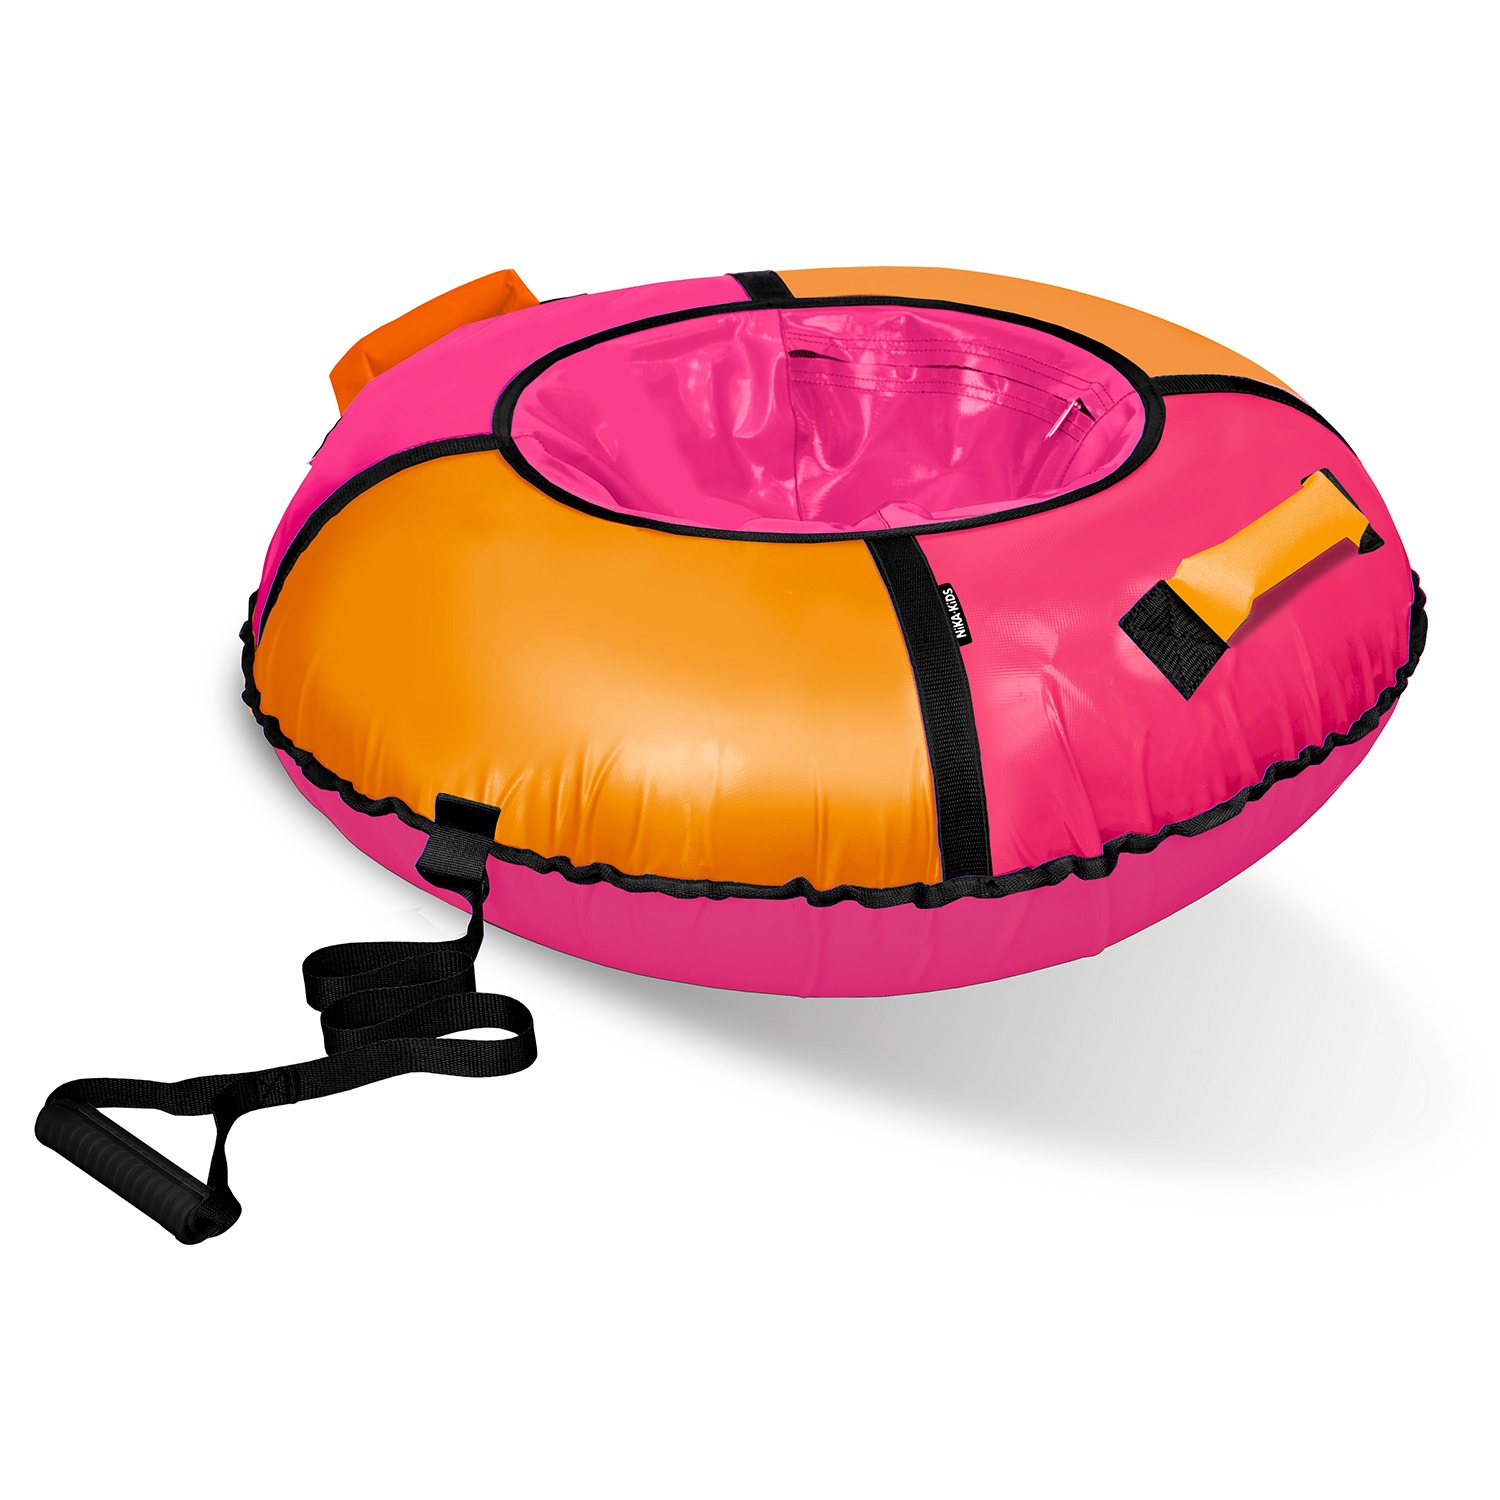 Тюбинг ватрушка Nika Классик ТБ1К-85/РО розовый/оранжевый тарелка круглая wilmax spiral d 18 см оранжевый